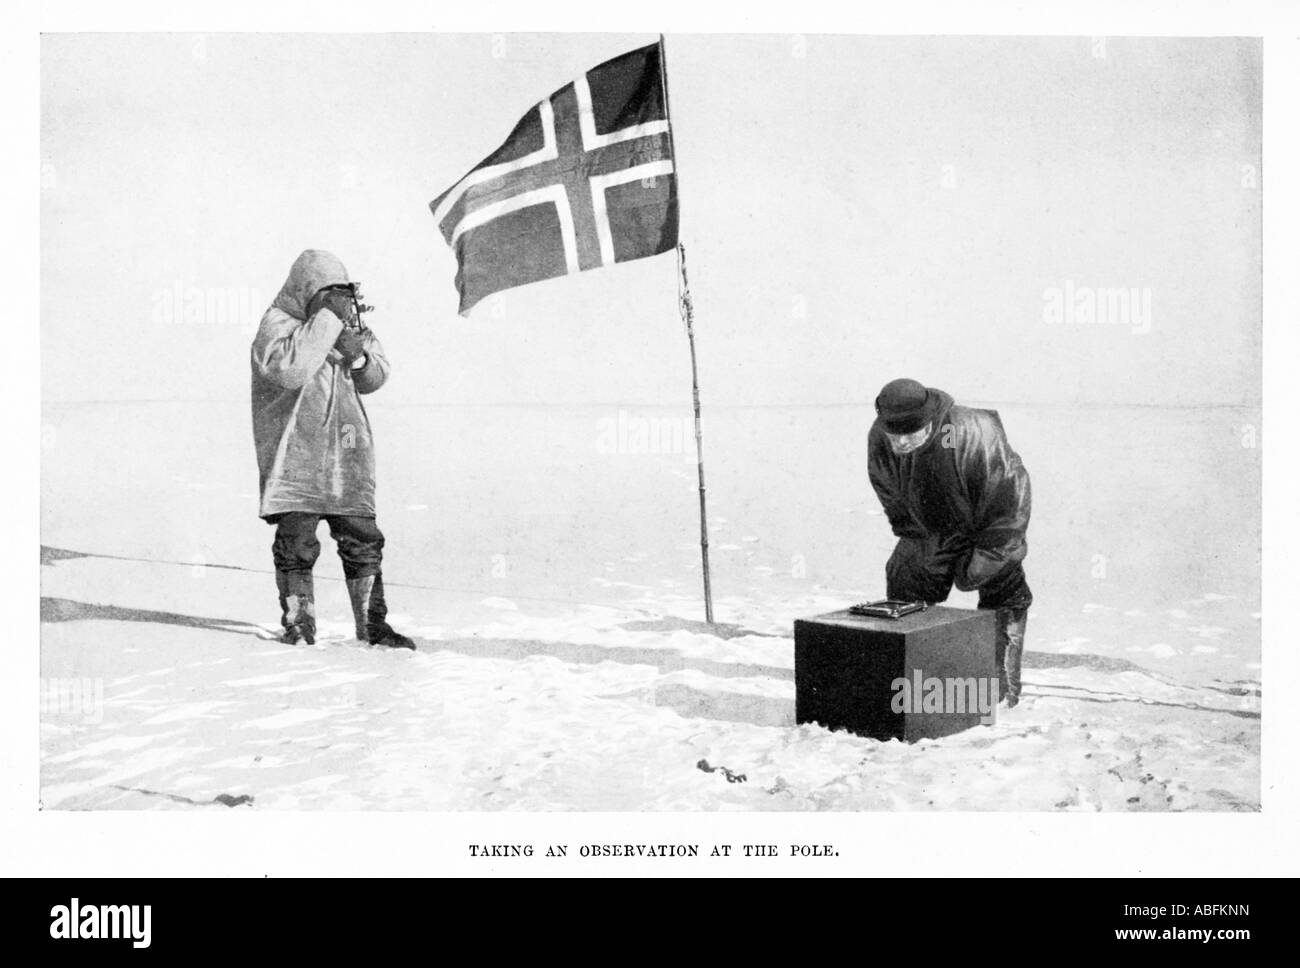 Observation norvégien au pôle sur la réussite de l'expédition Amundsen de 1911 le jour après l'arrivée Banque D'Images